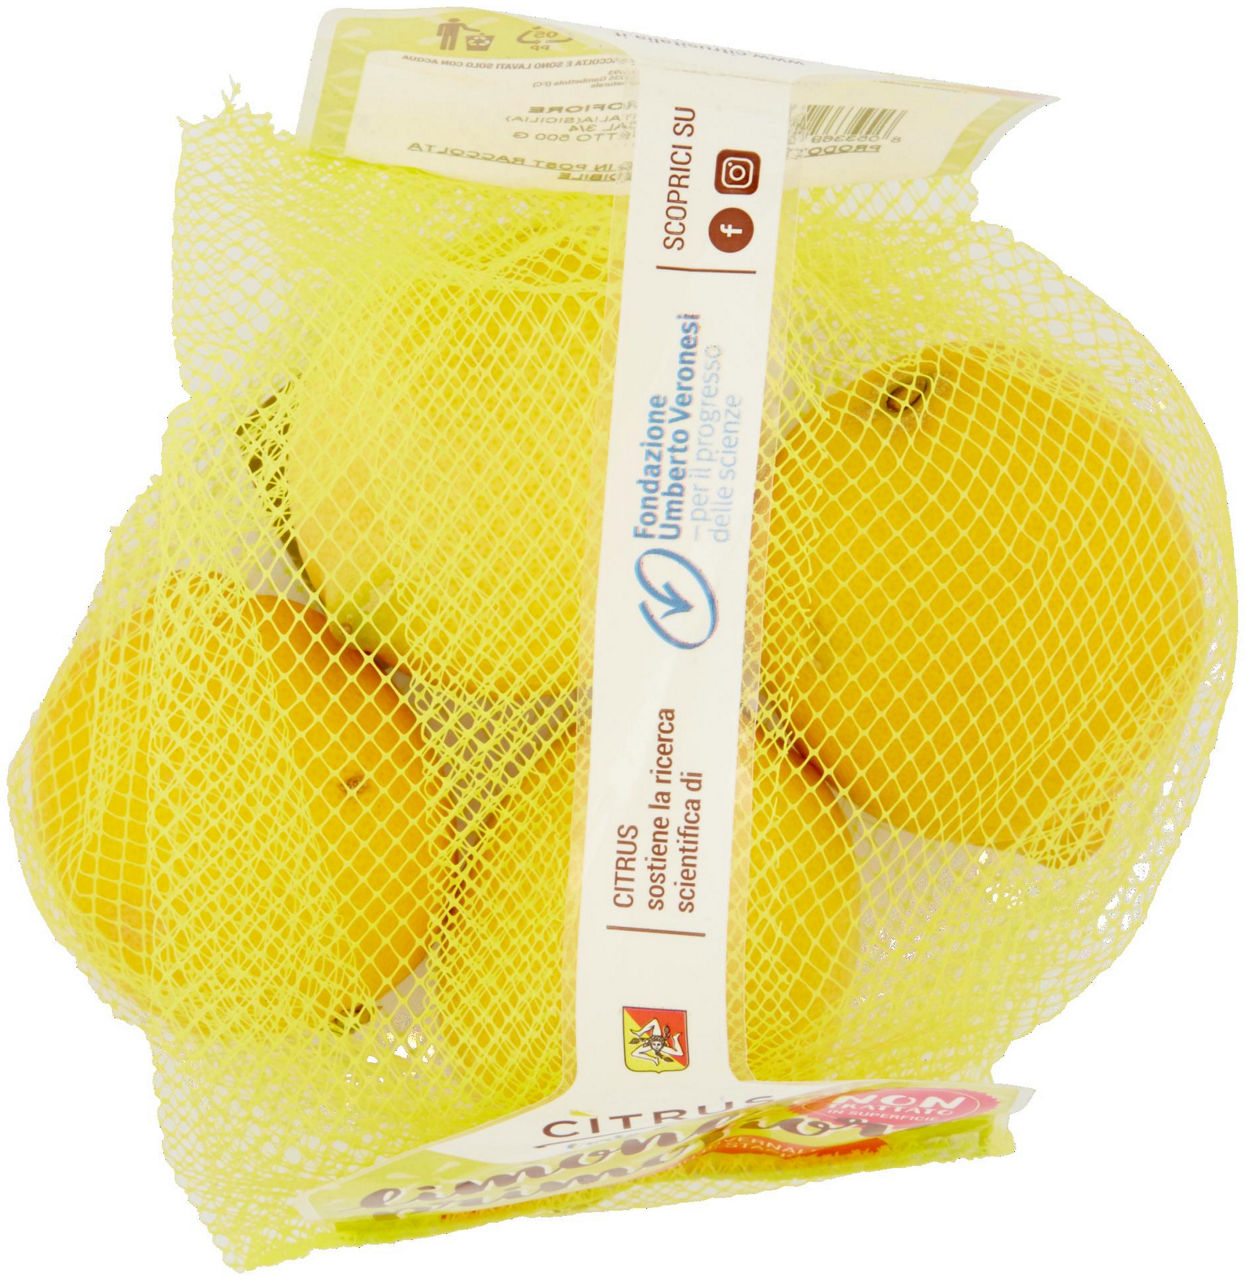 Limoni primofiore buccia edibile gr 500 - 4